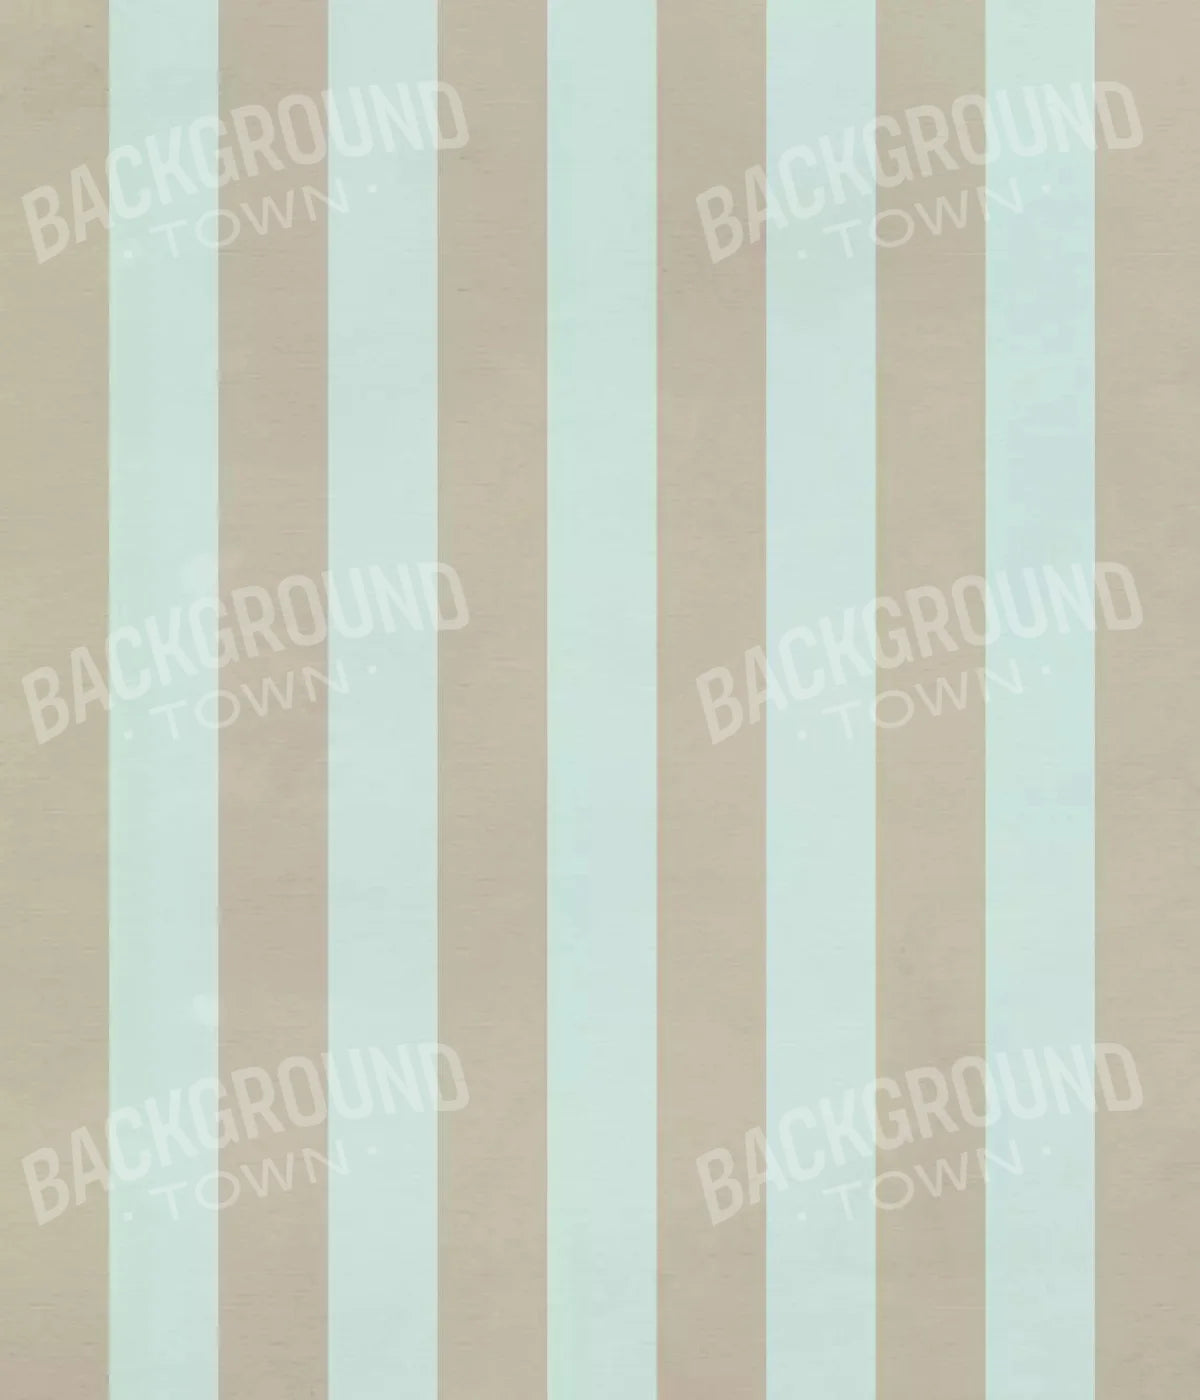 Burton 10X12 Ultracloth ( 120 X 144 Inch ) Backdrop